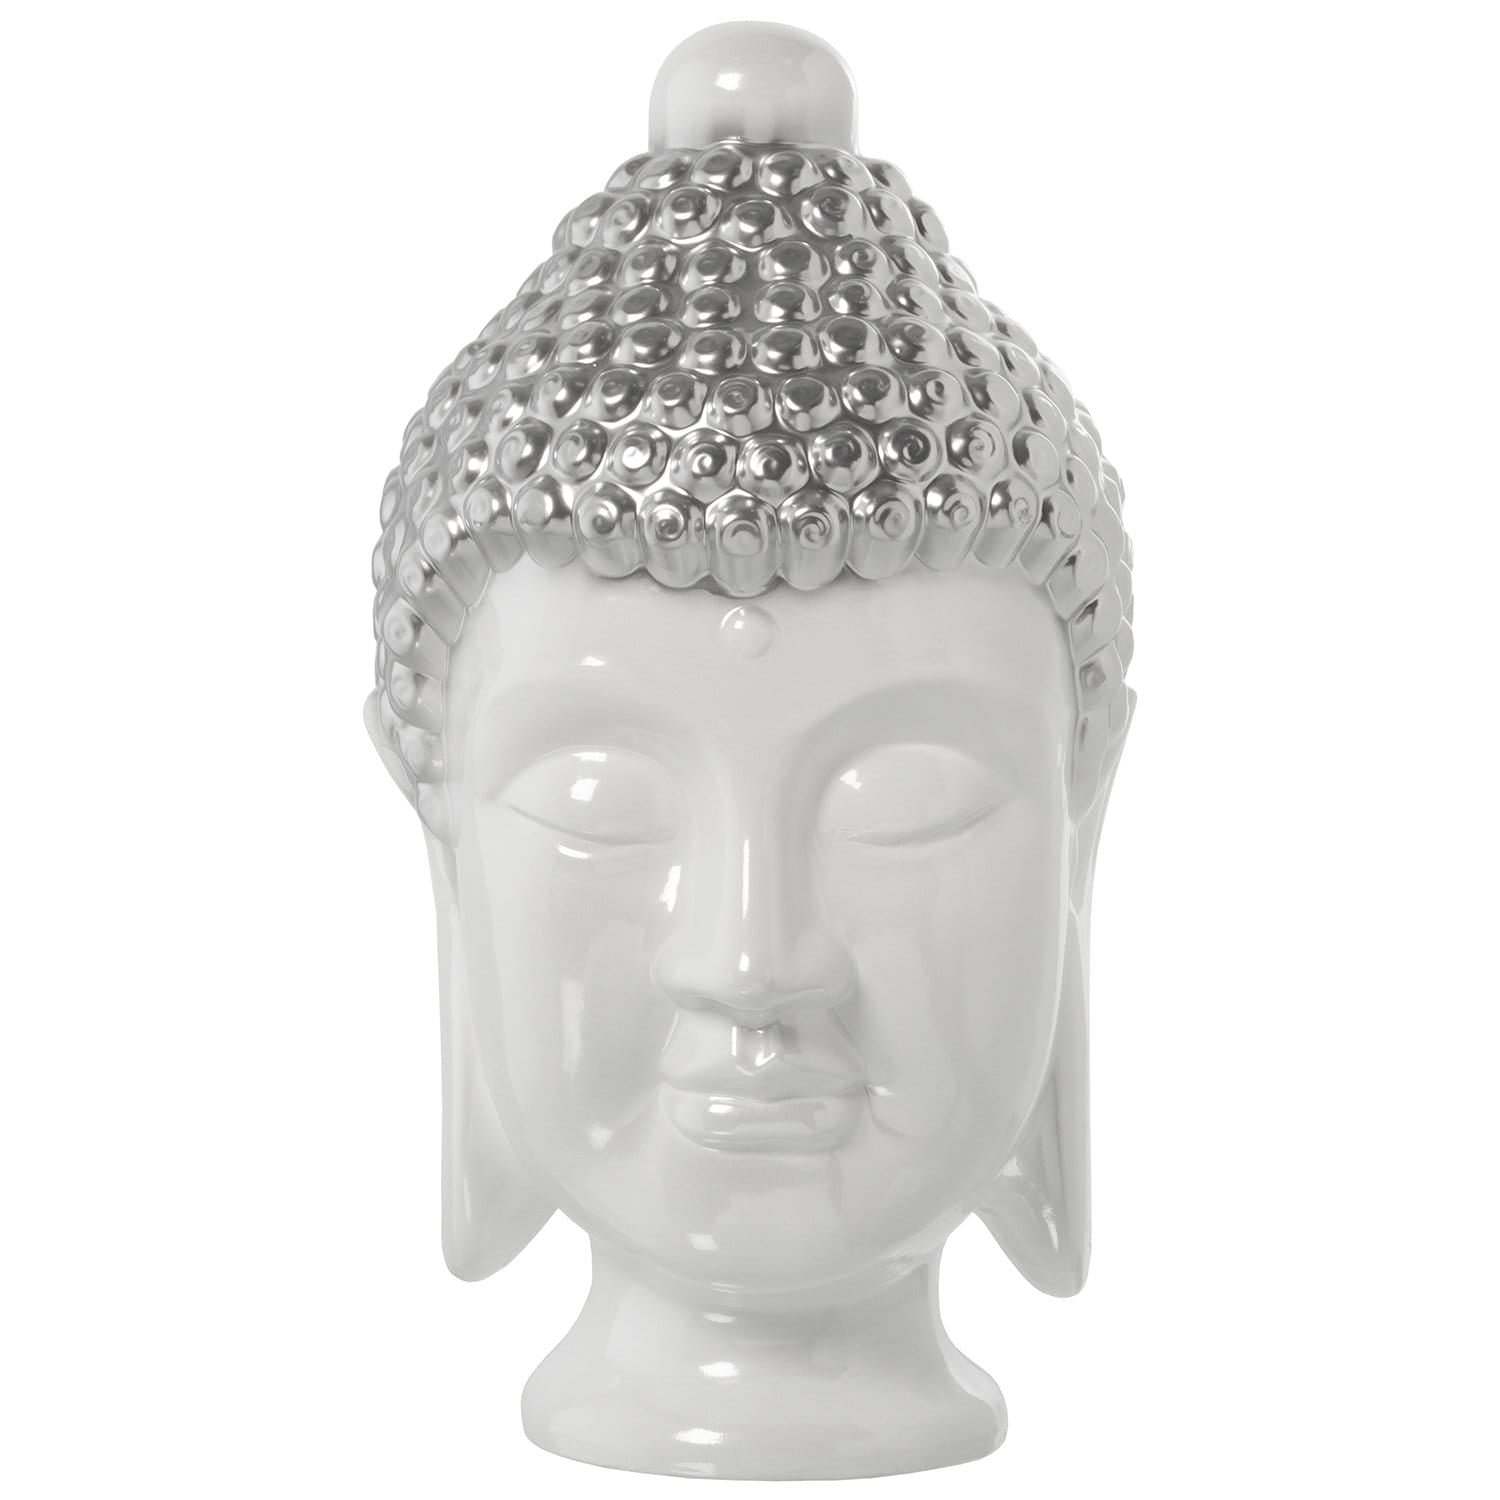 SAVANA CHIC Decorazione Testa di Buddha in Ceramica Bianca Argento 22x25x43 cm - Dolci pensieri gift